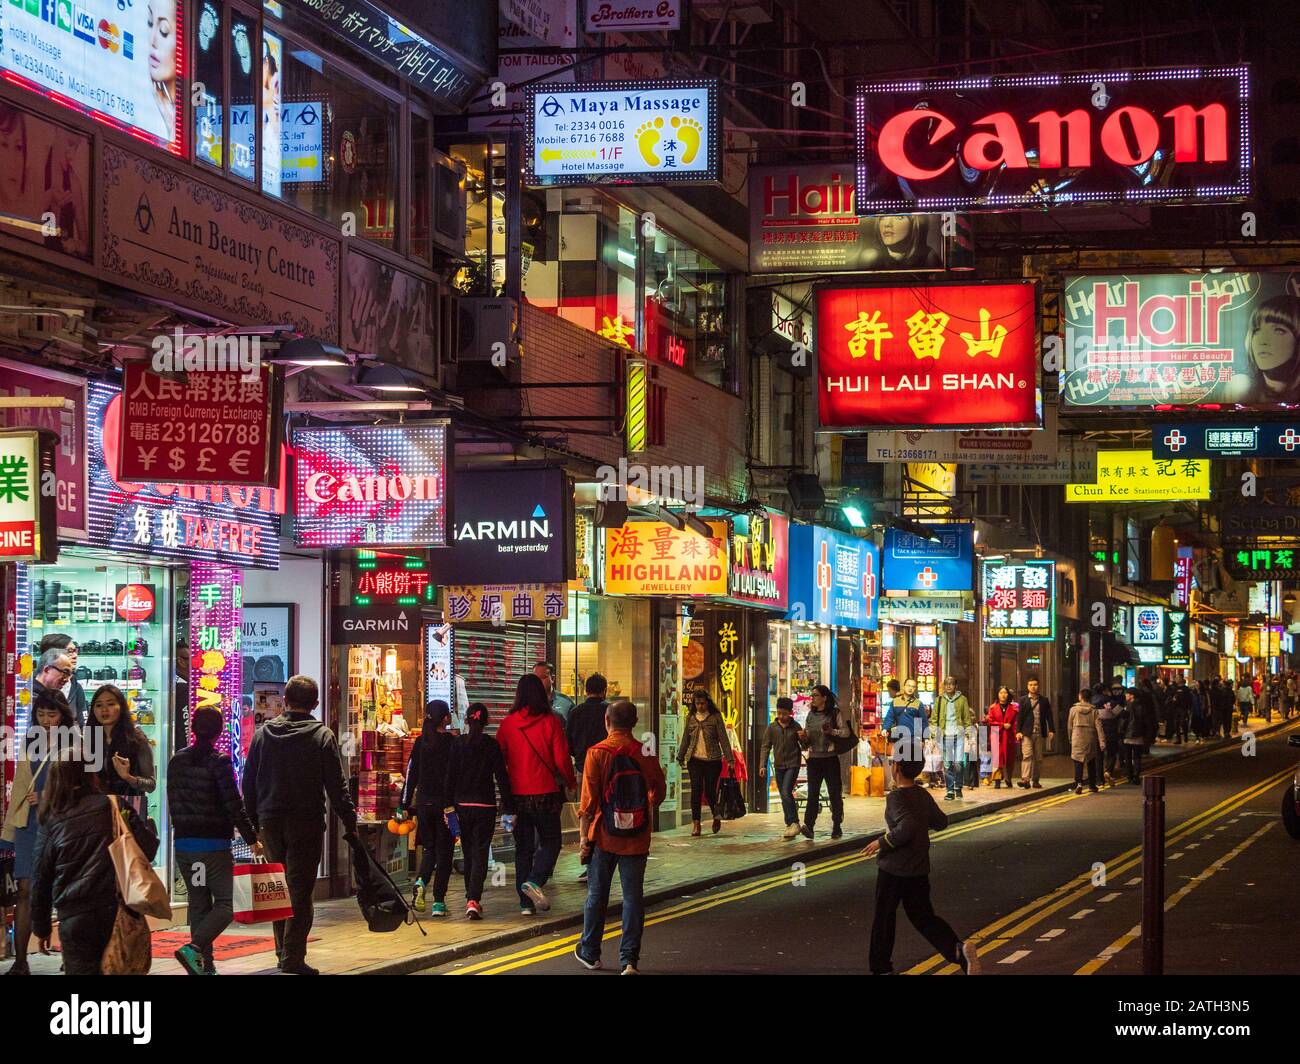 Hong Kong Neon - Hong Kong Shopping on Lock Road in the Tsim Sha Tsui area of Kowloon, Hong Kong, China. Stock Photo